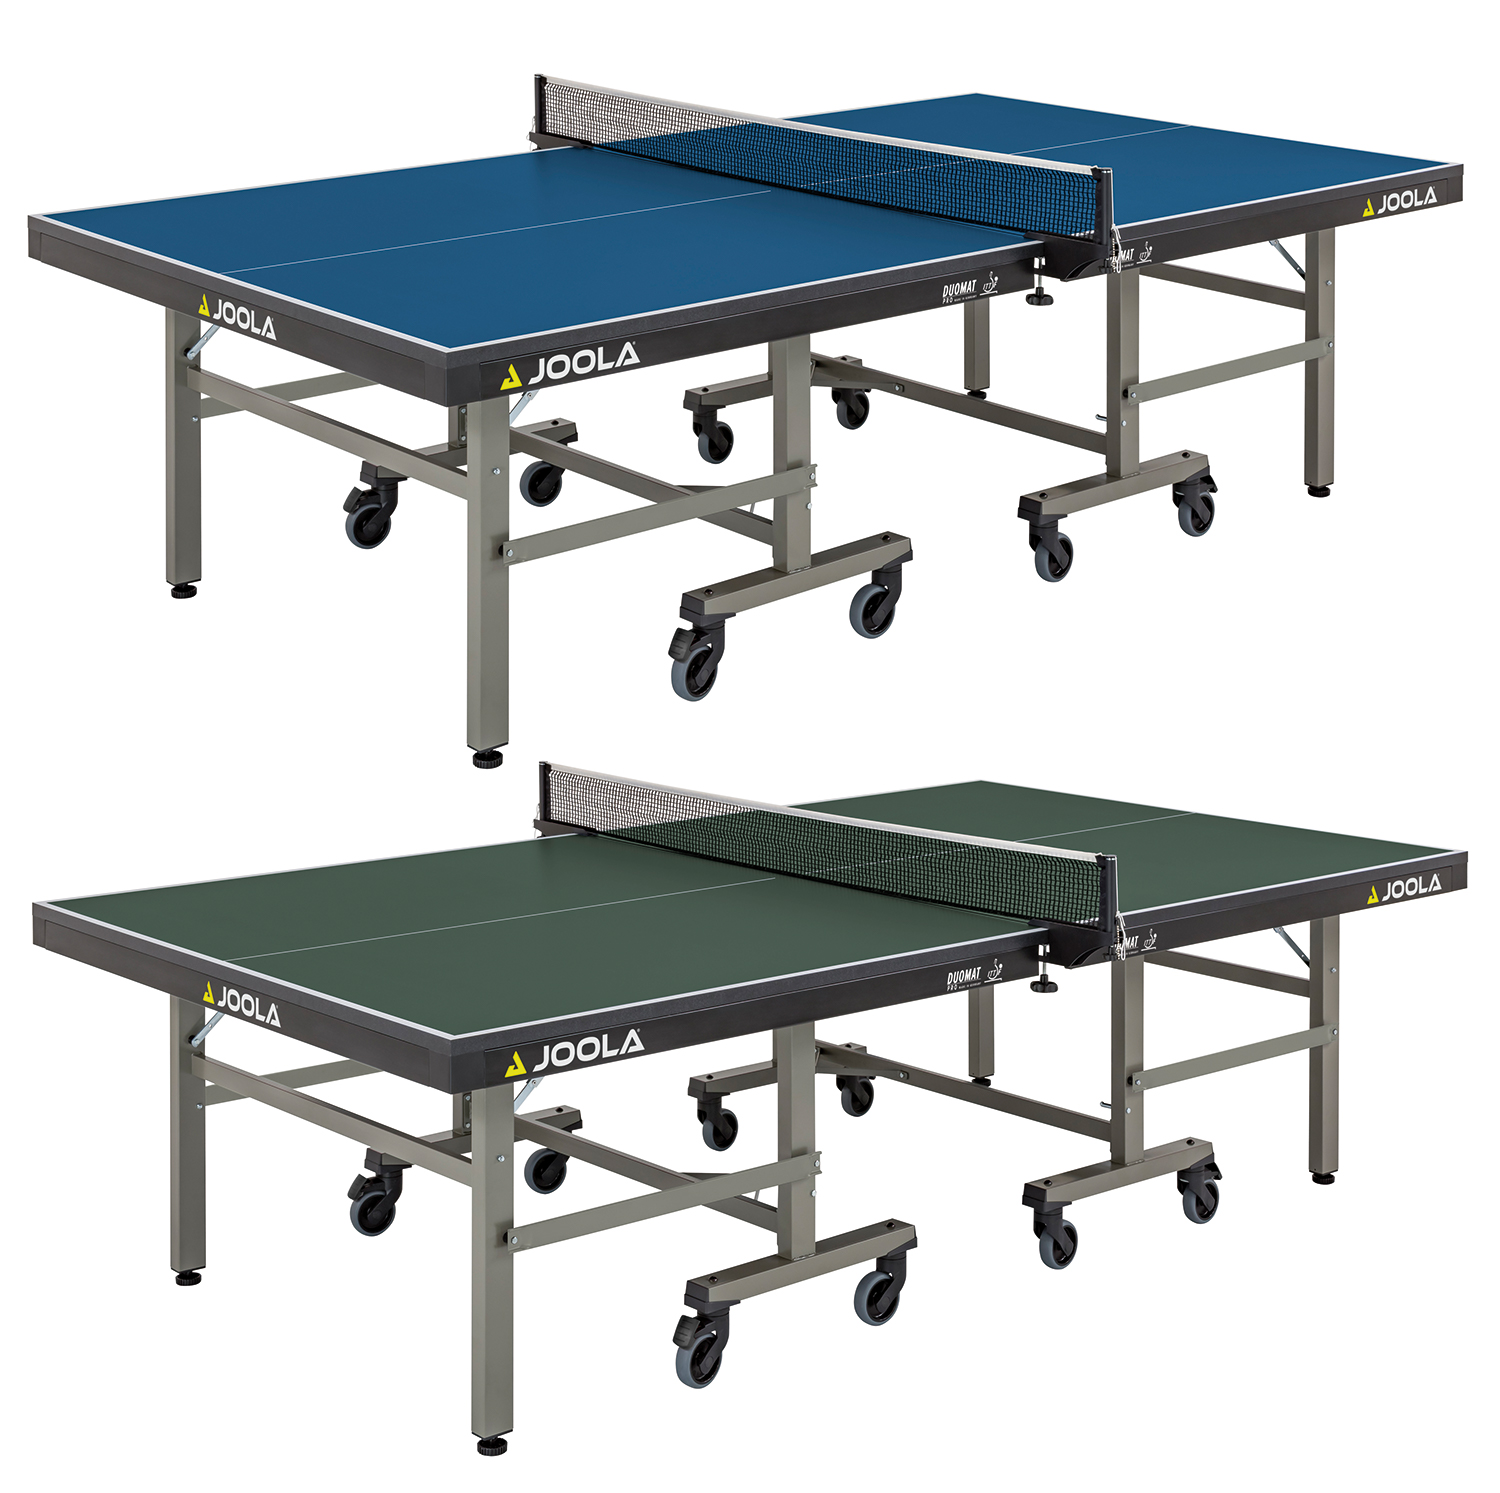 Теннисный стол Donic. Joola стол. Теннисный стол для слепых. Механизм складывания теннисного стола. Профессиональный теннисный стол